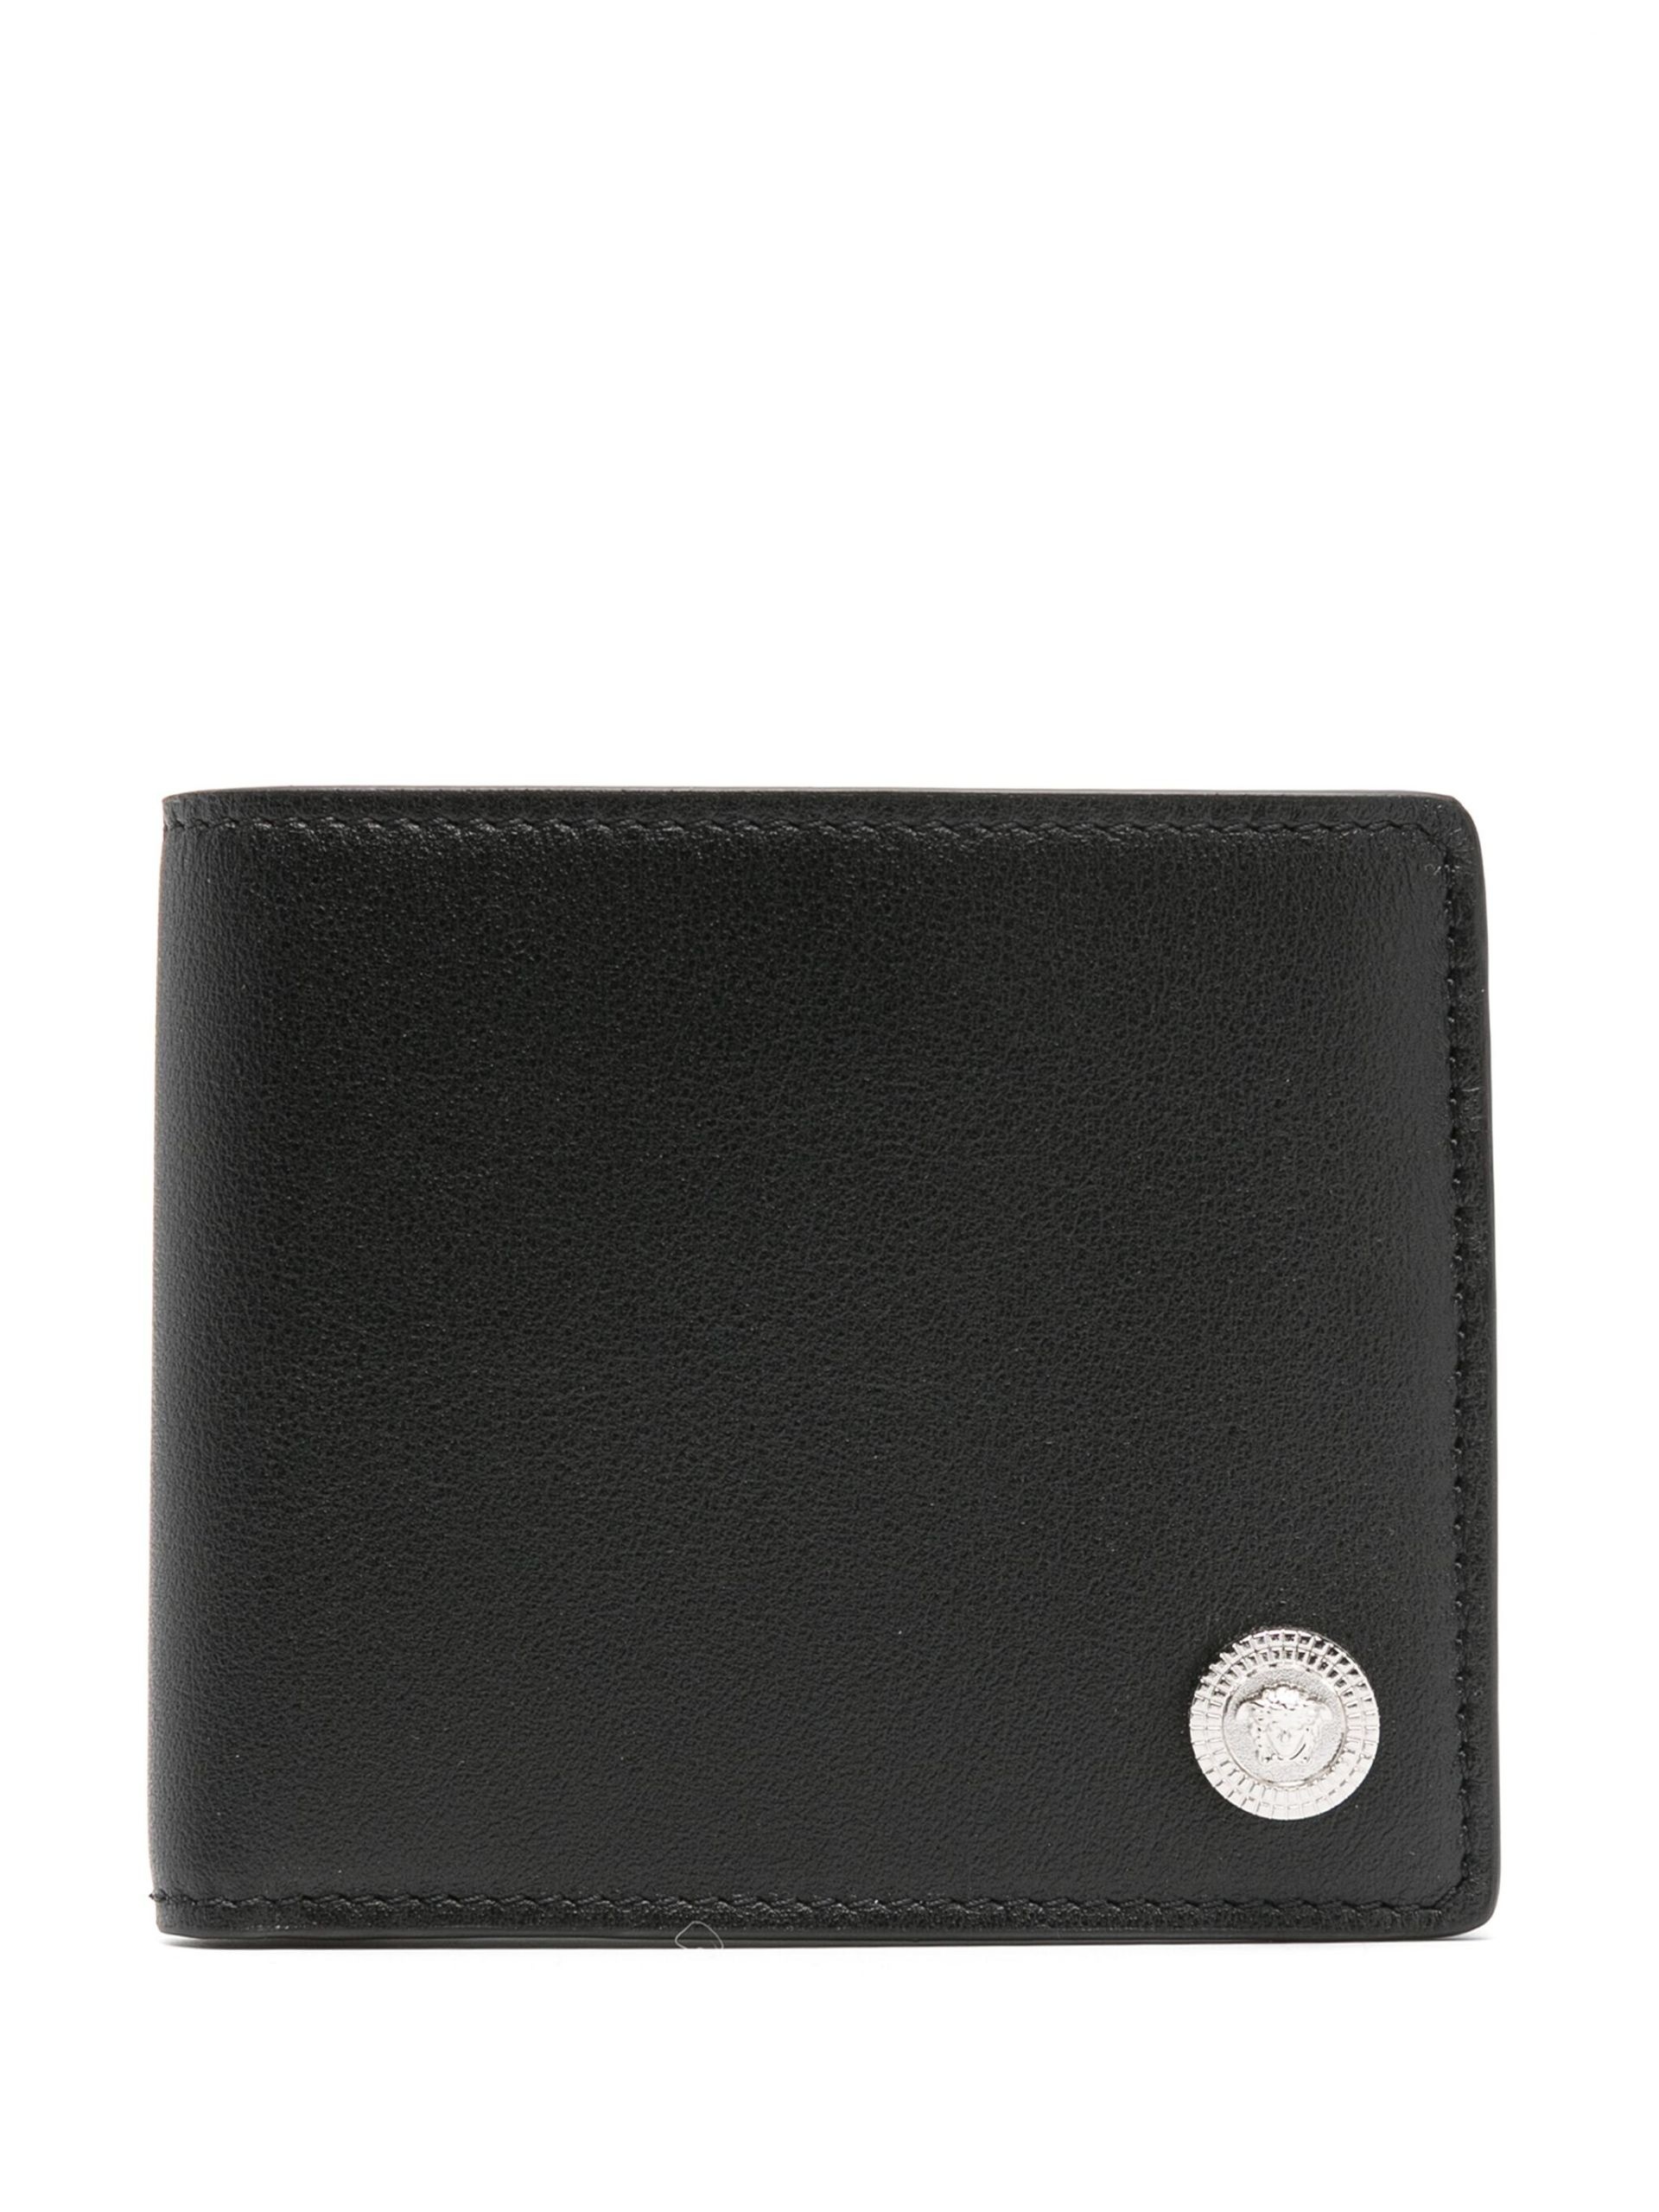 Black Medusa Biggie Leather Wallet - 1